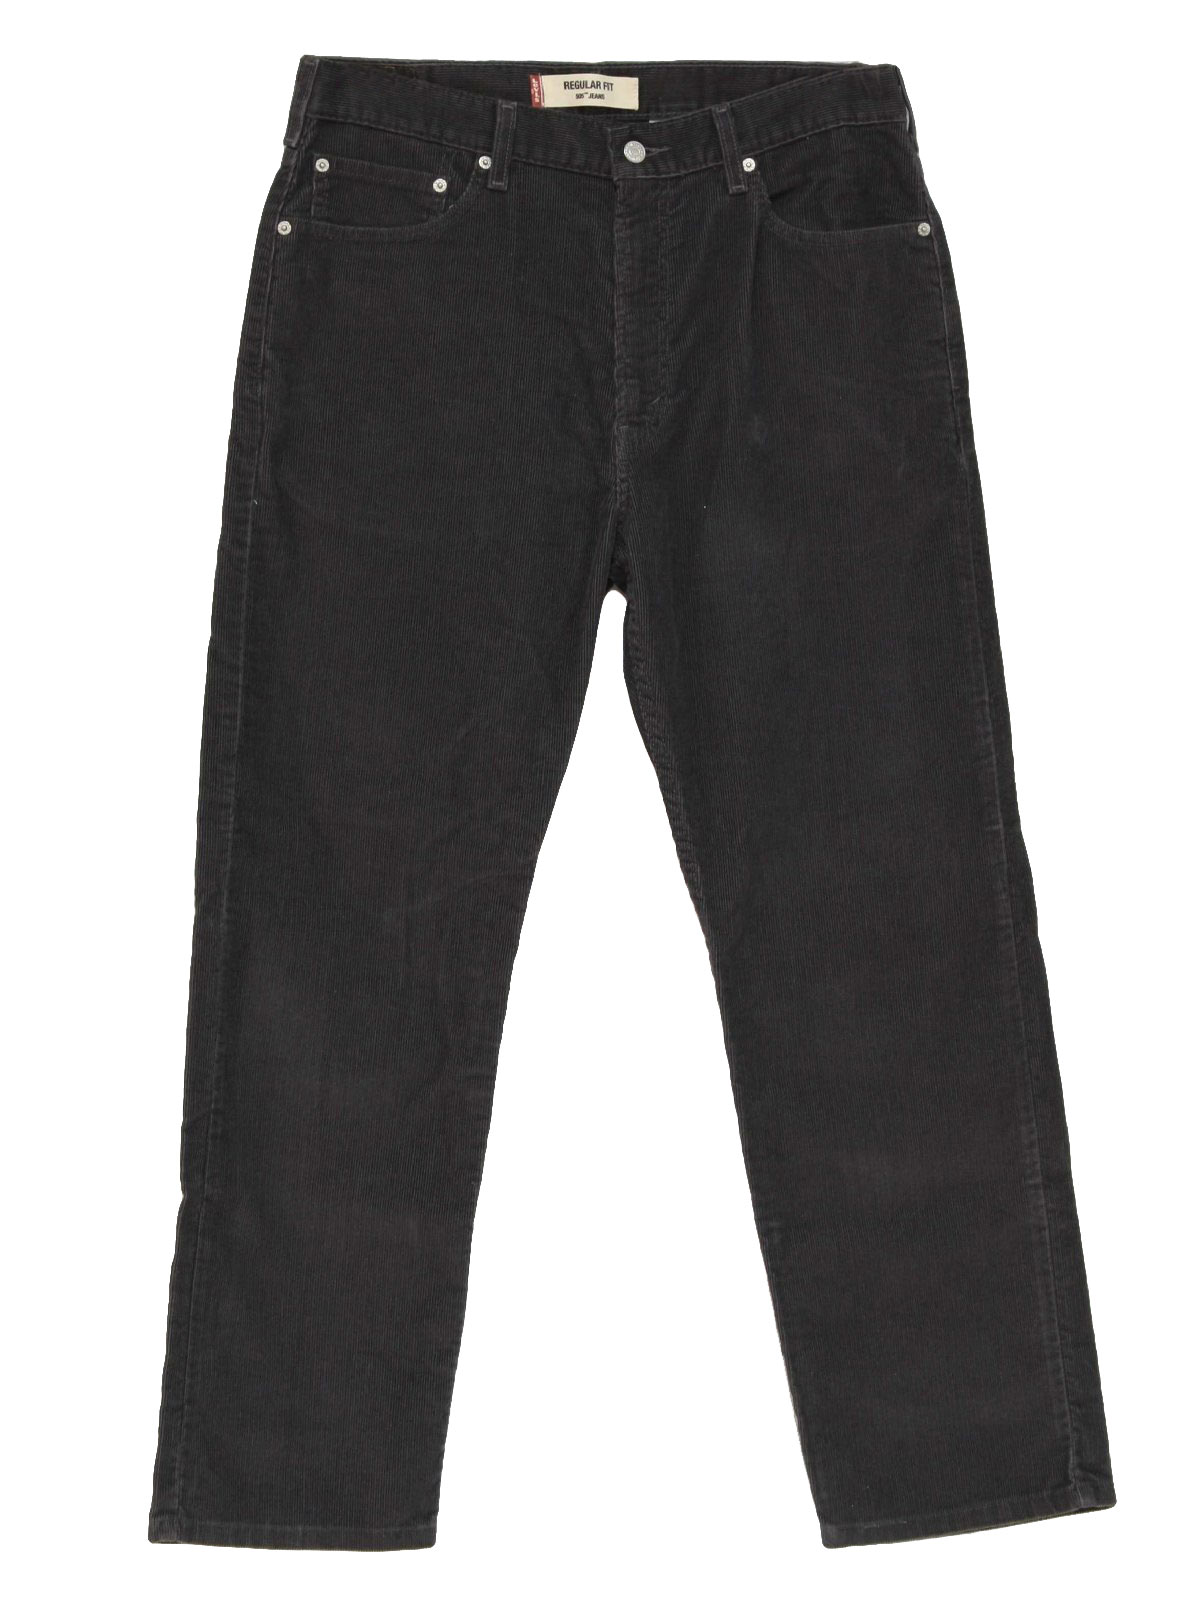 Levis 505 90's Vintage Pants: 90s -Levis 505- Mens charcoal grey cotton ...